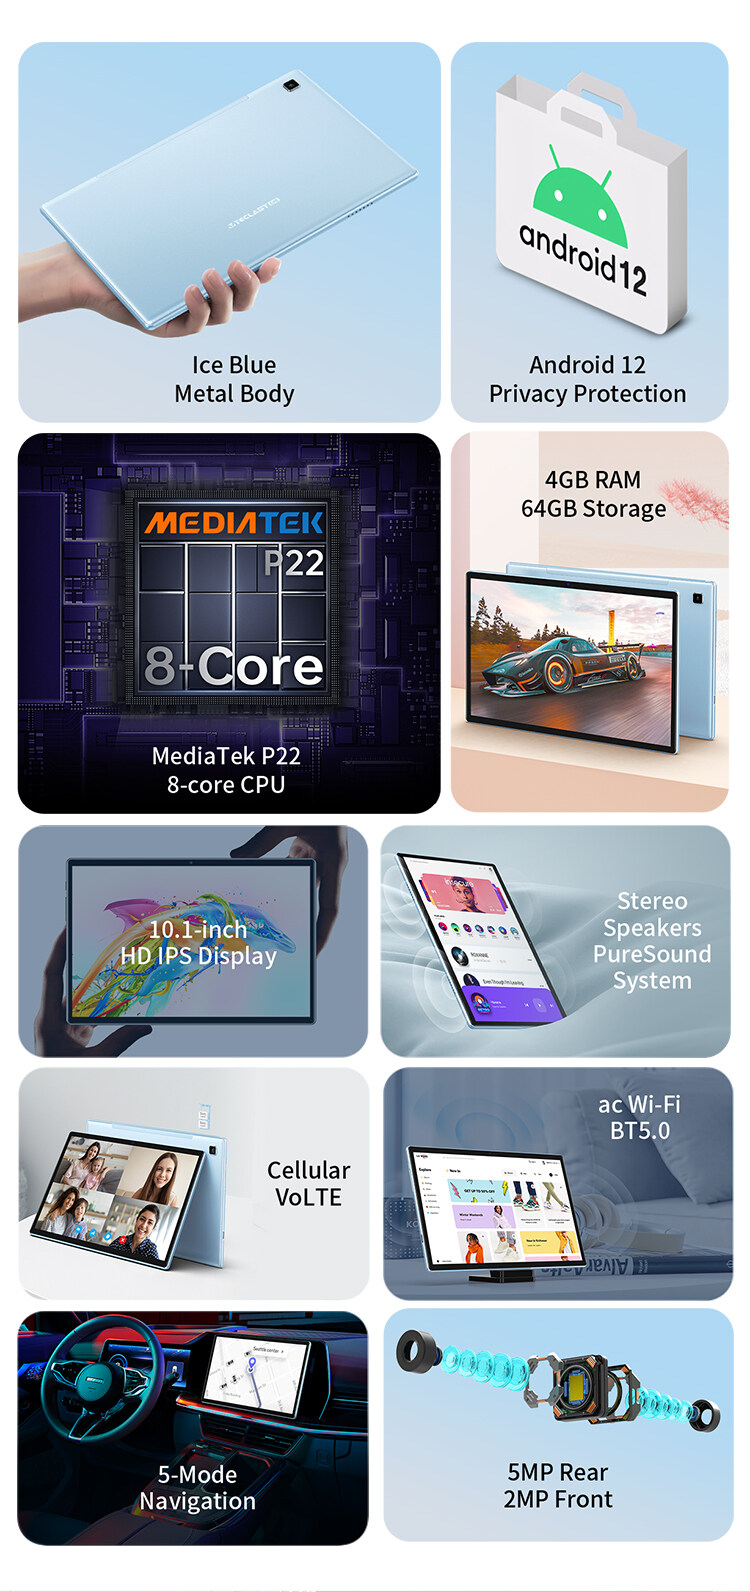 ภาพที่ให้รายละเอียดเกี่ยวกับ 🔥Teclast P20S tablet android 12 Wifi 4G LTE แท็บเล็ต จอแสดงผล10.1 นิ้ว RAM 4GB ROM 64GB CPU 8-core MT6762 ความจุสูงสุด 1TB